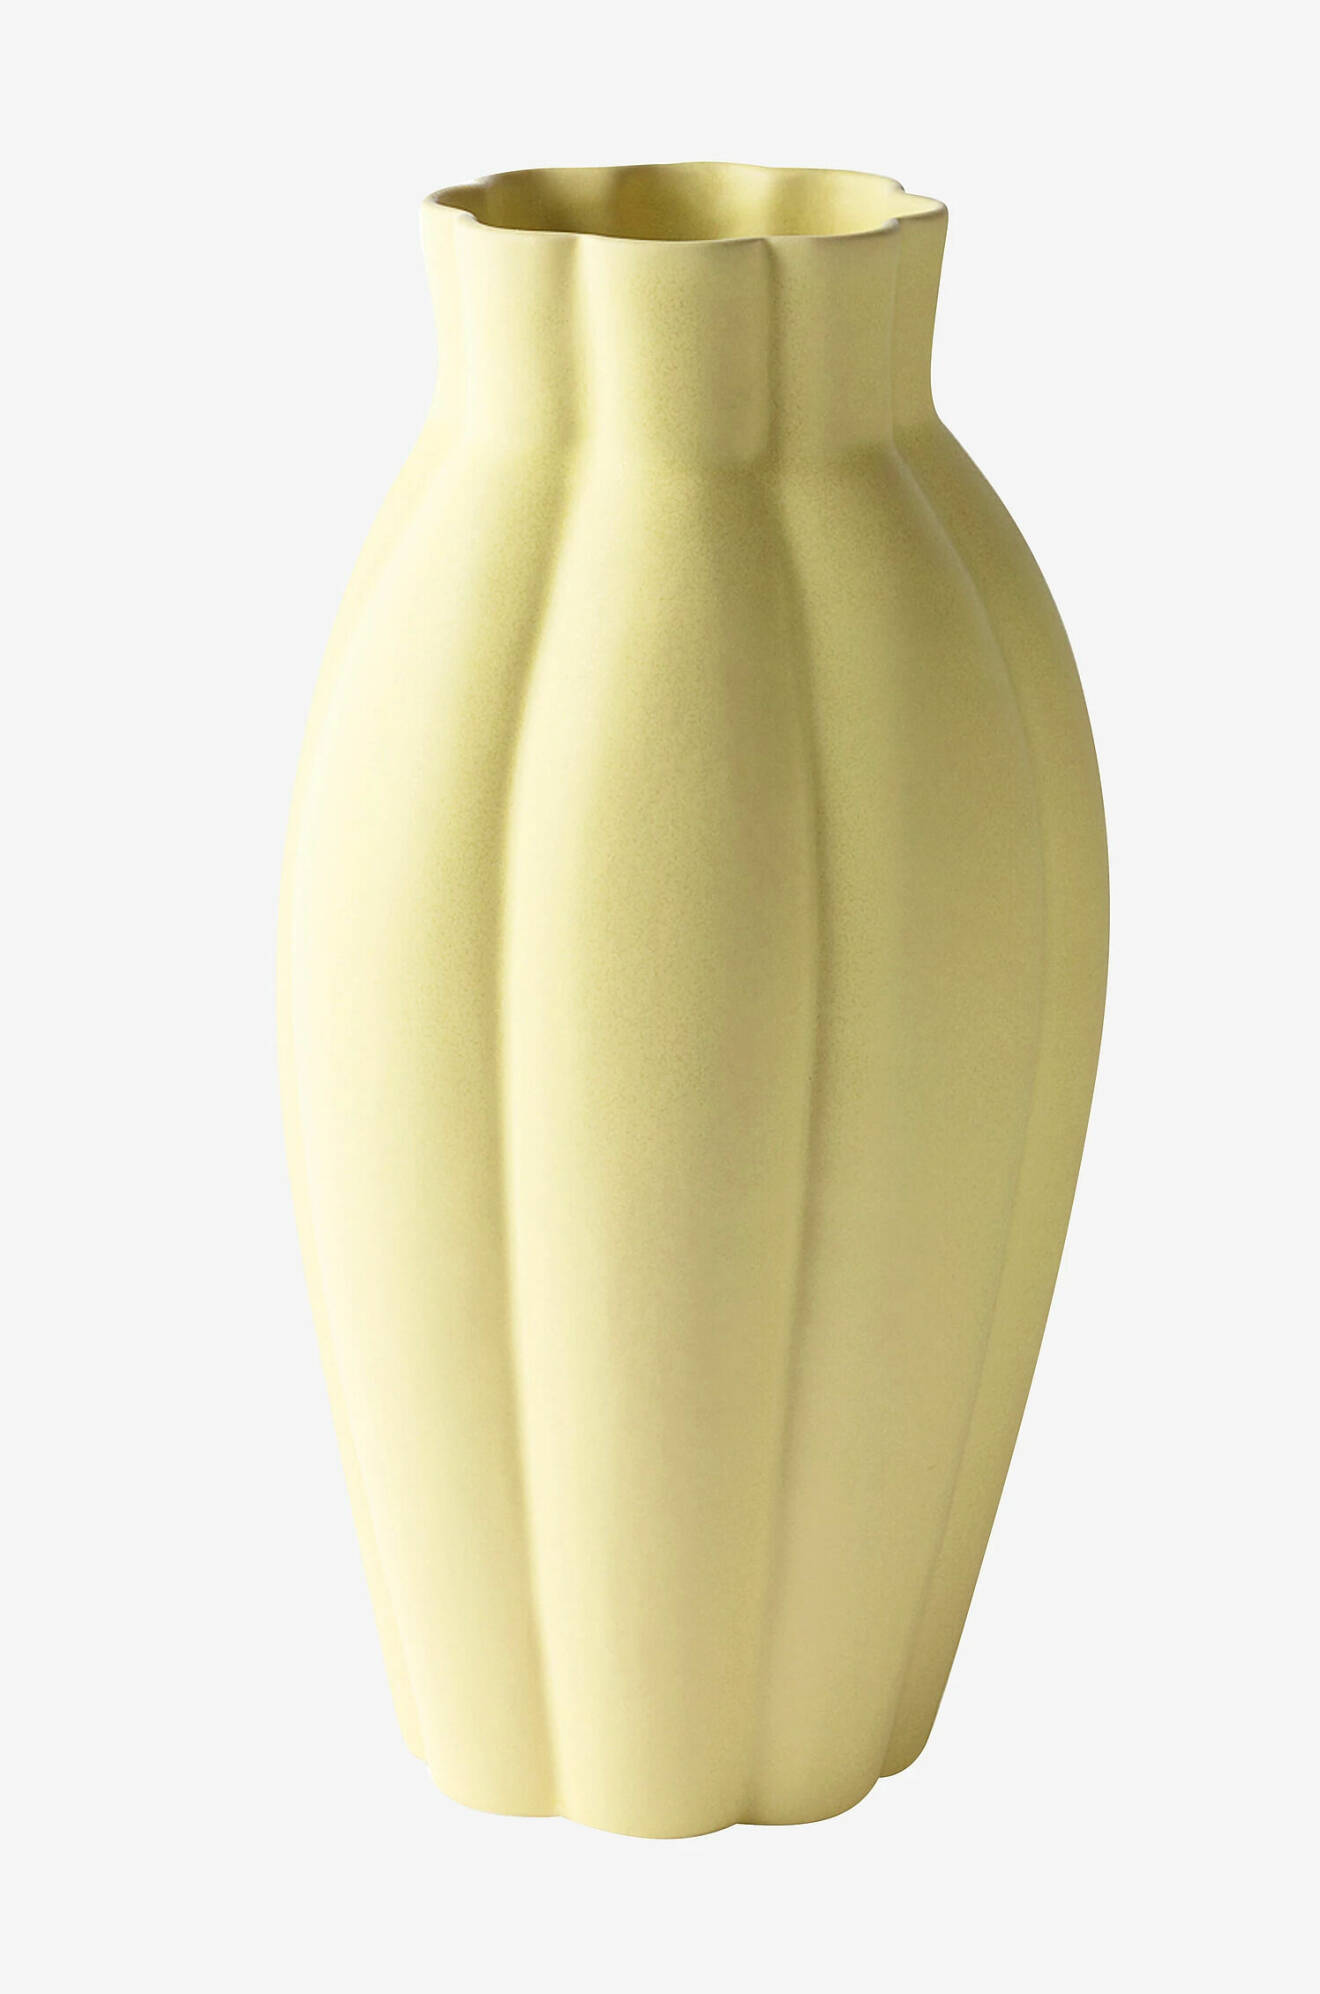 Hög gul vas i keramik